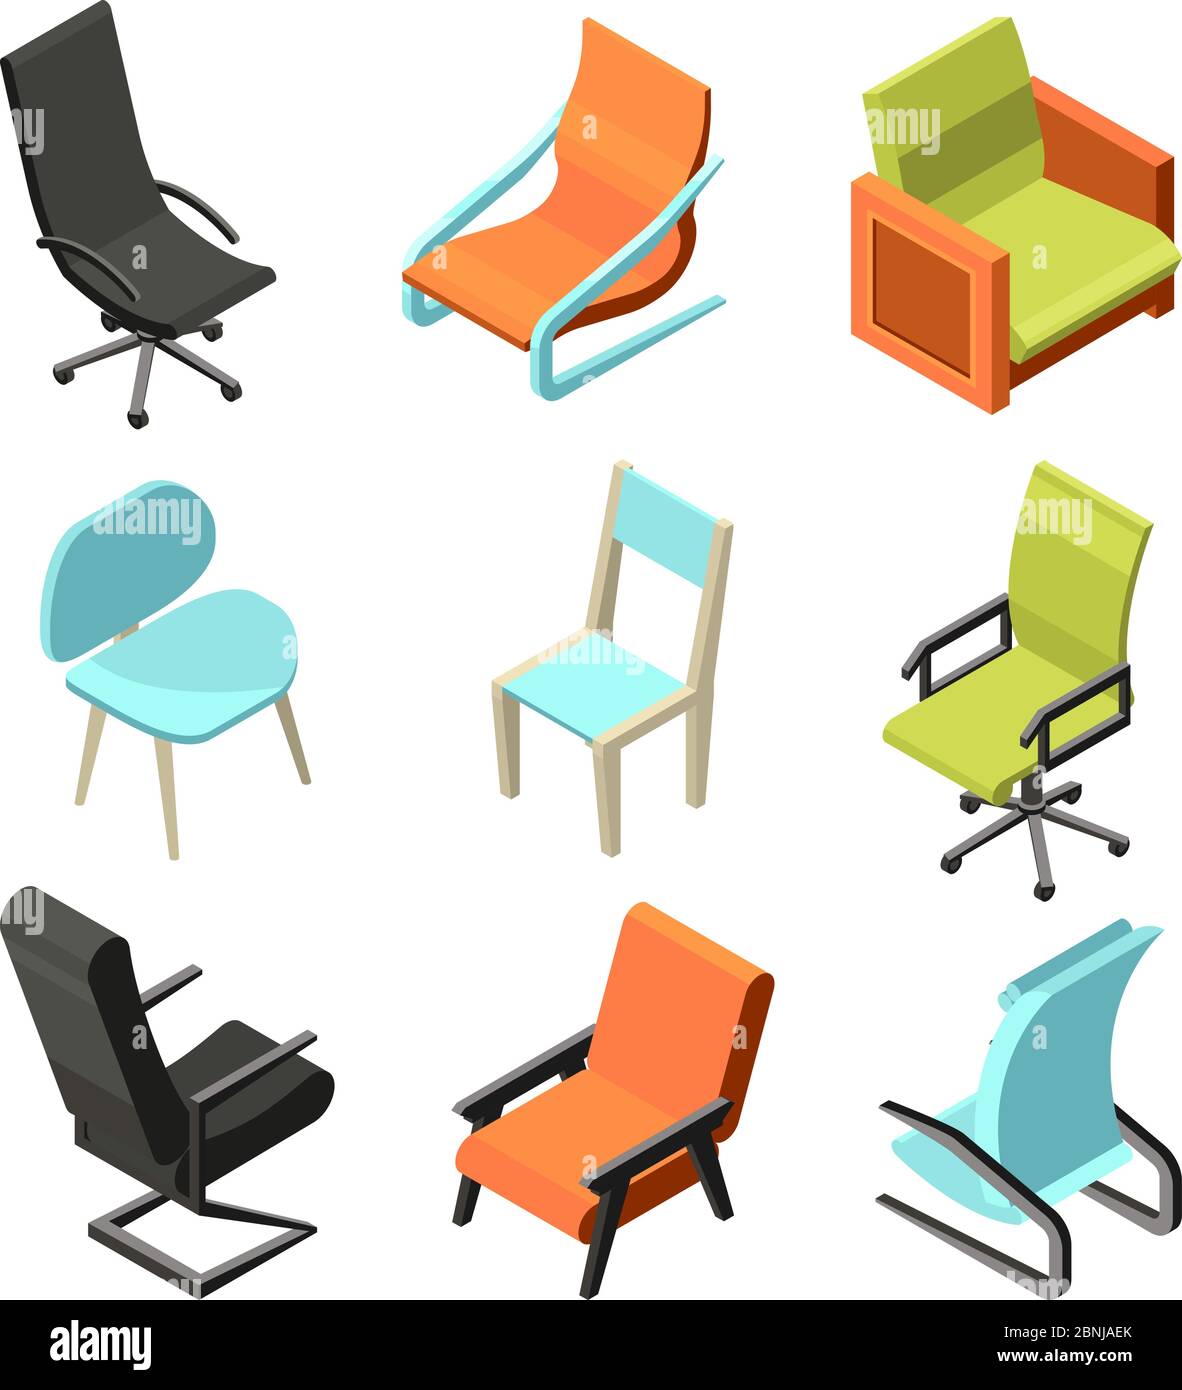 Büromöbel. Verschiedene Stühle und Sessel aus Leder. Isometrische Bilder Stock Vektor